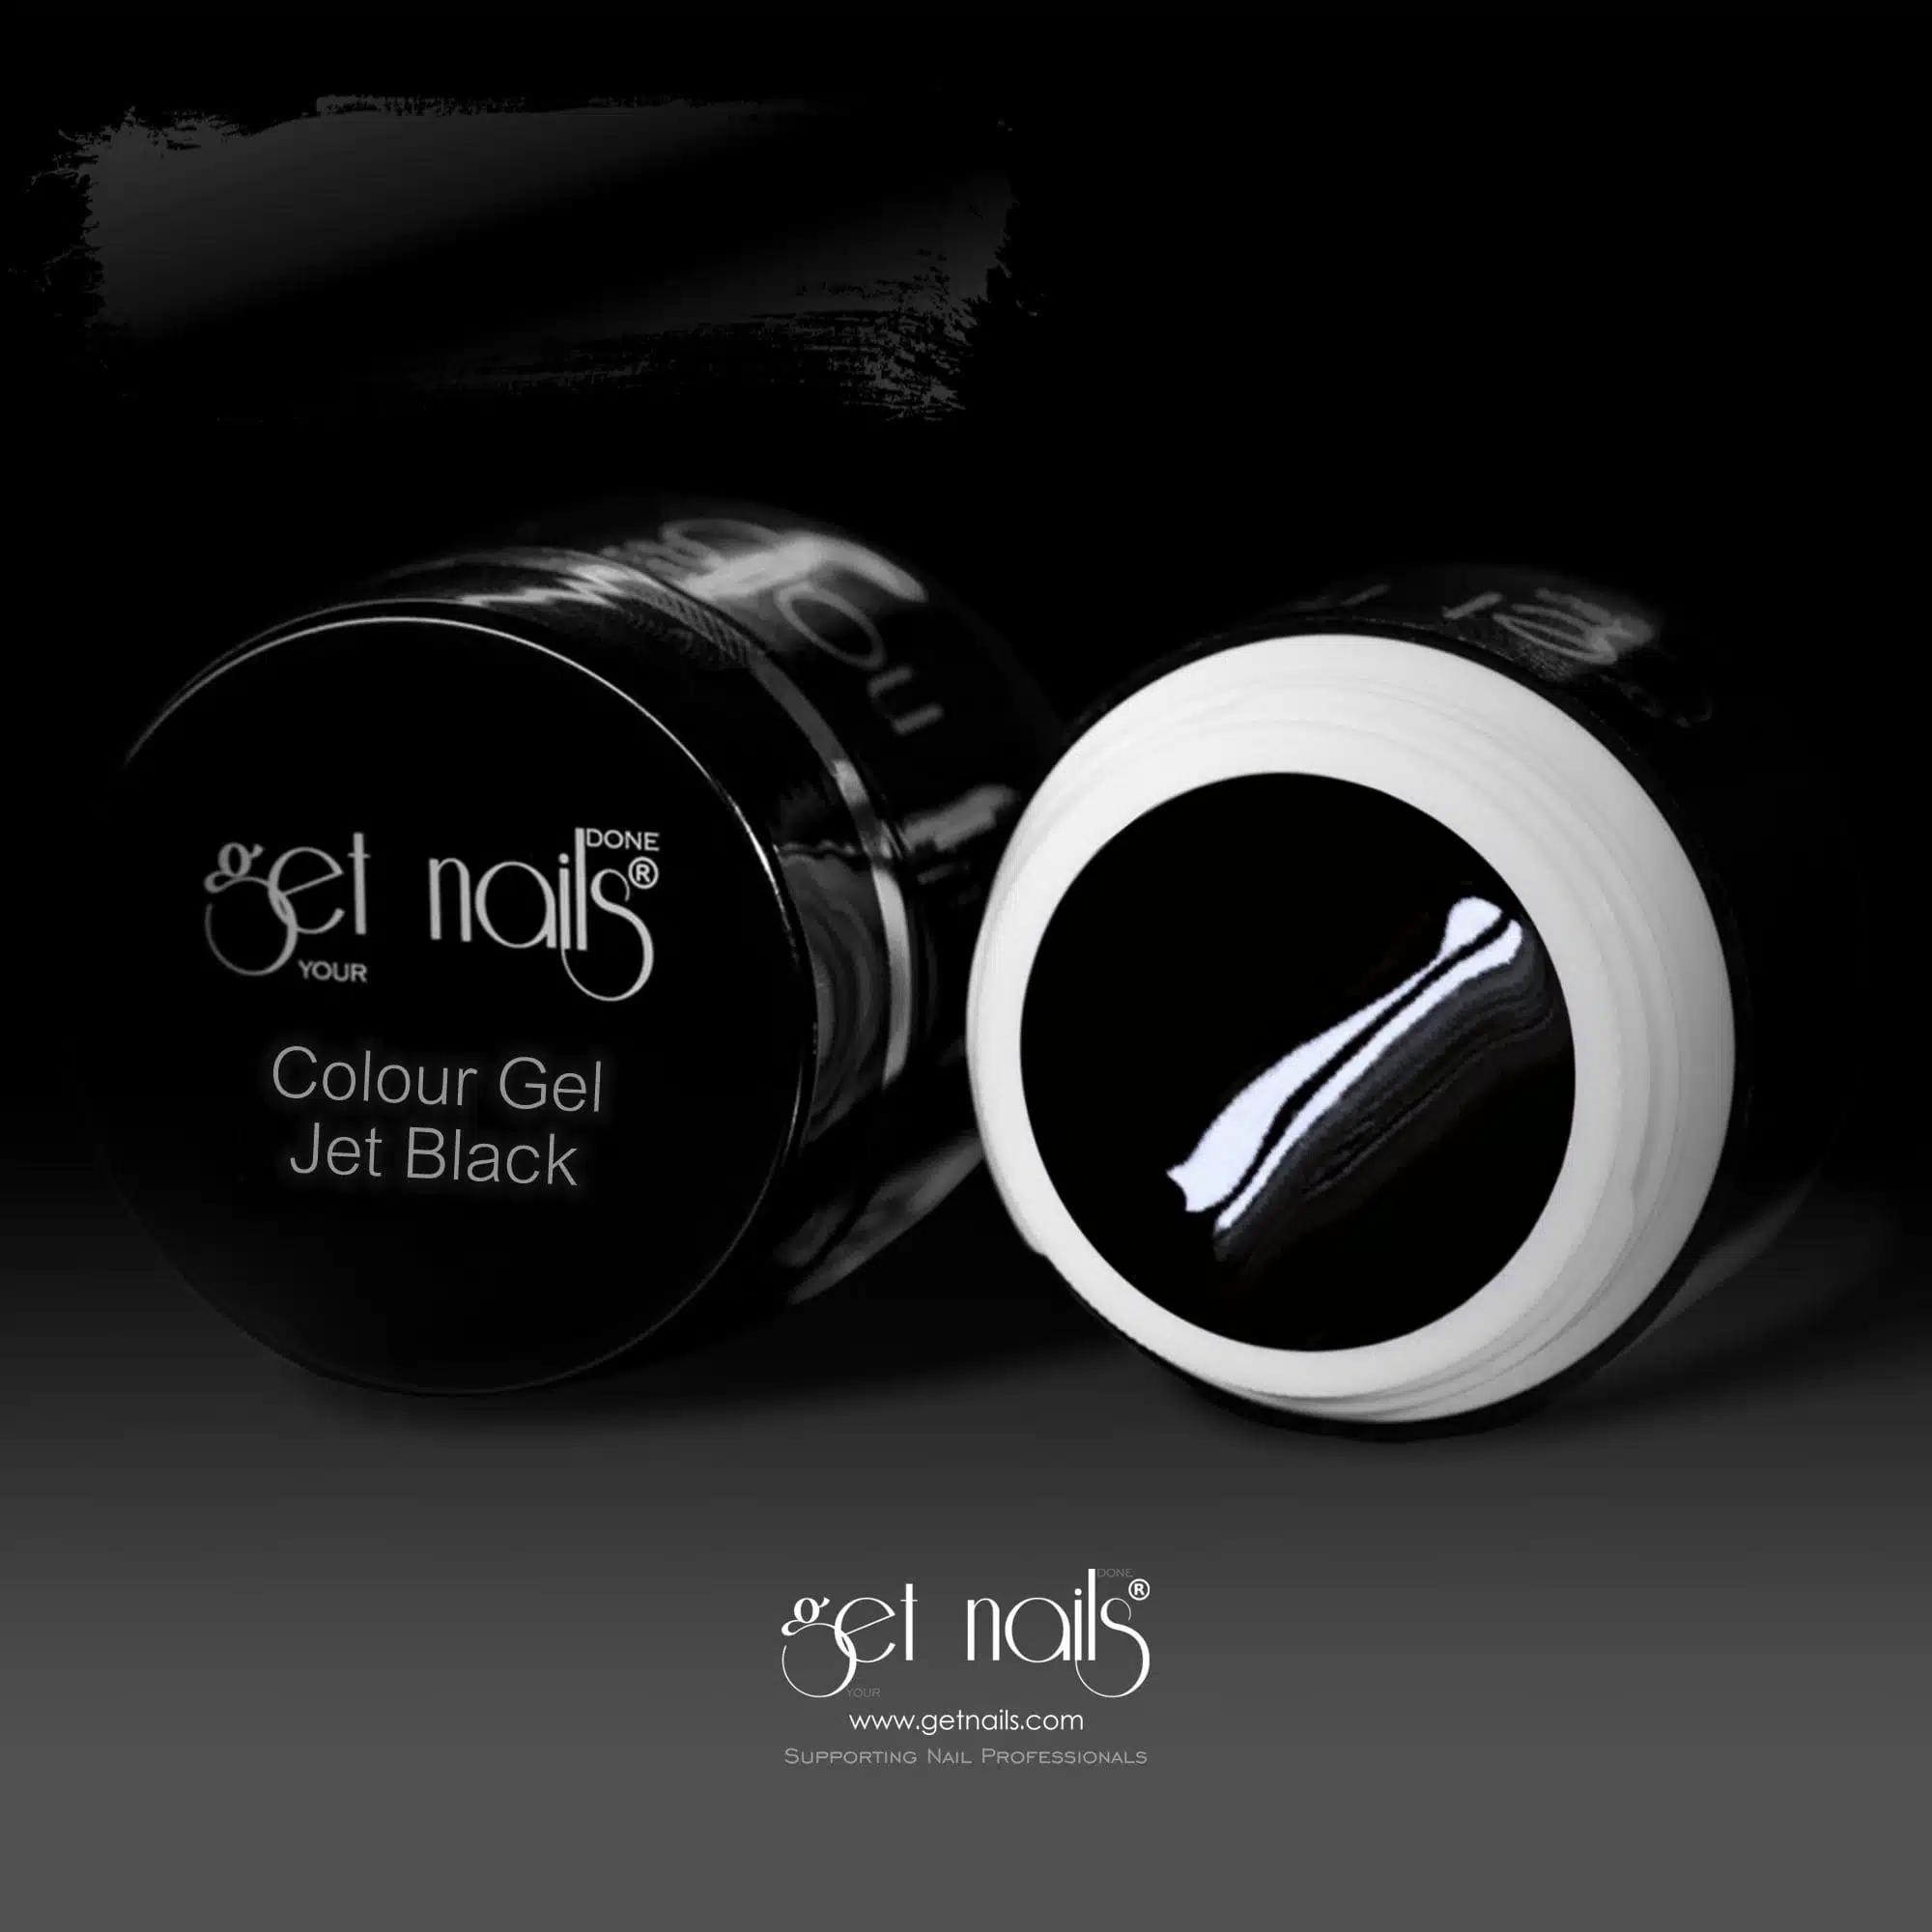 Get Nails Austria - Colour Gel Jet Black 5g